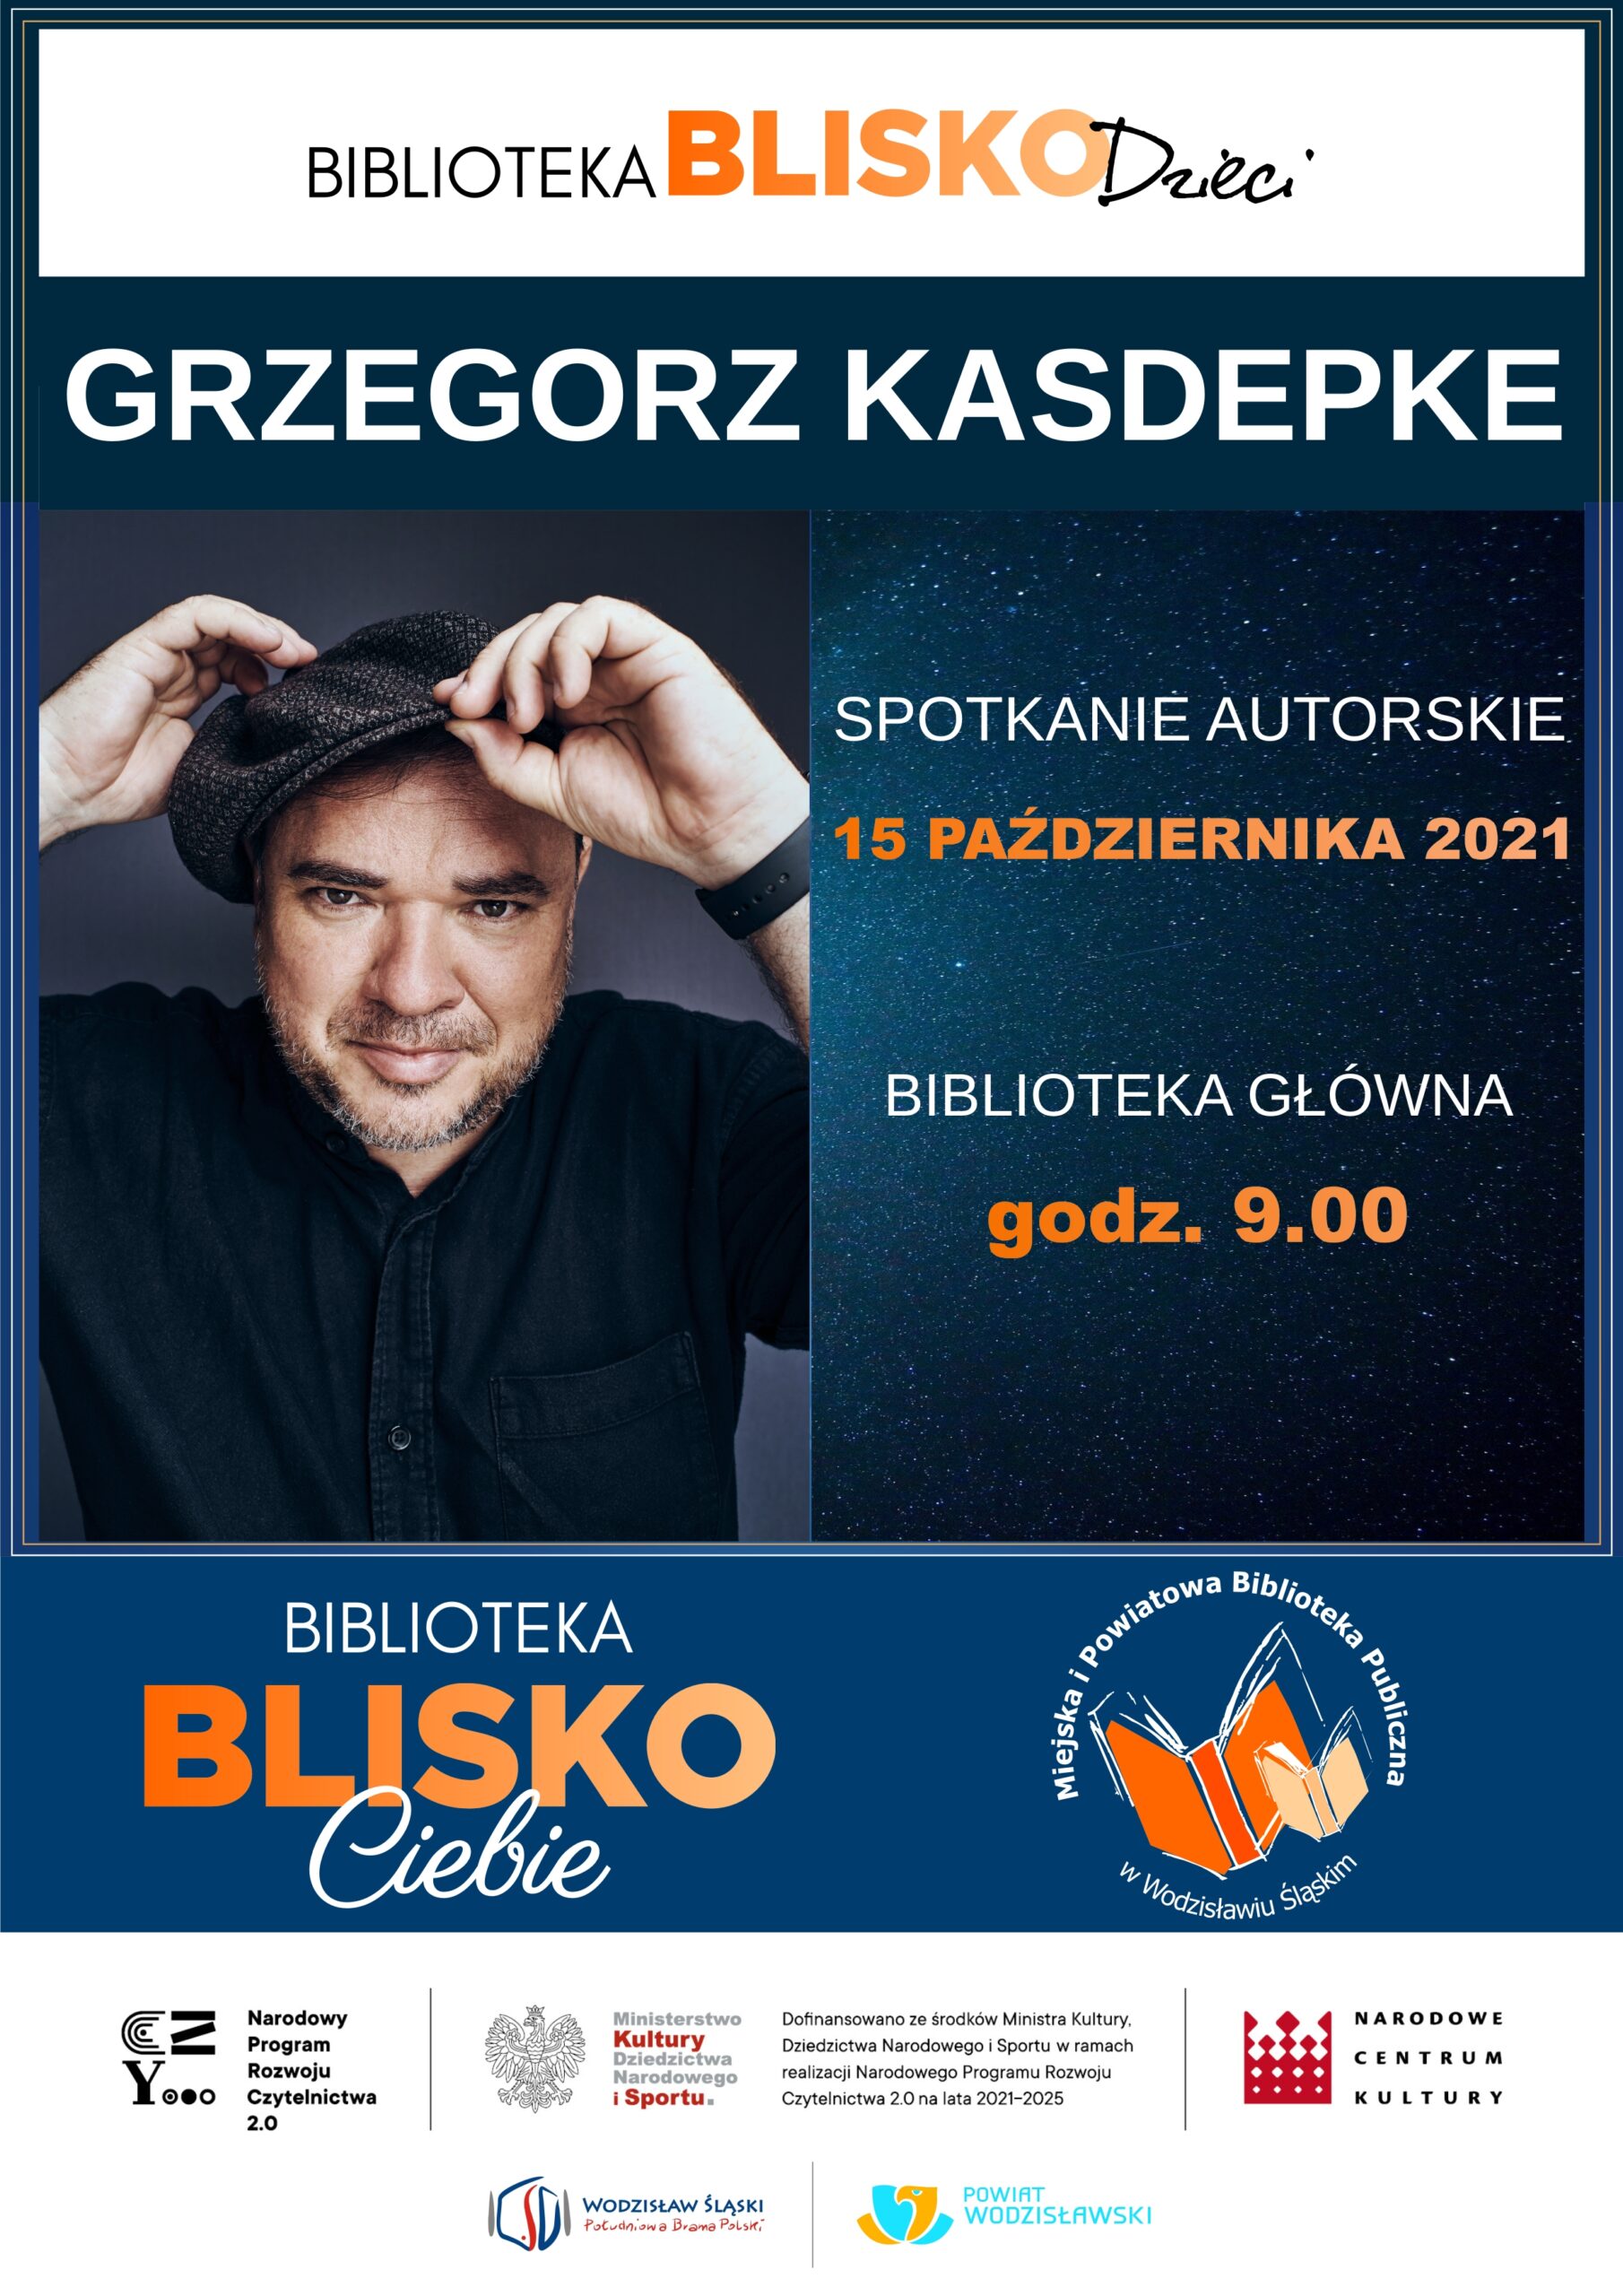 Biblioteka BLISKO Dzieci - Grzegorz Kasdepke - 15 października 2021 - Projekt: Biblioteka BLISKO Ciebie